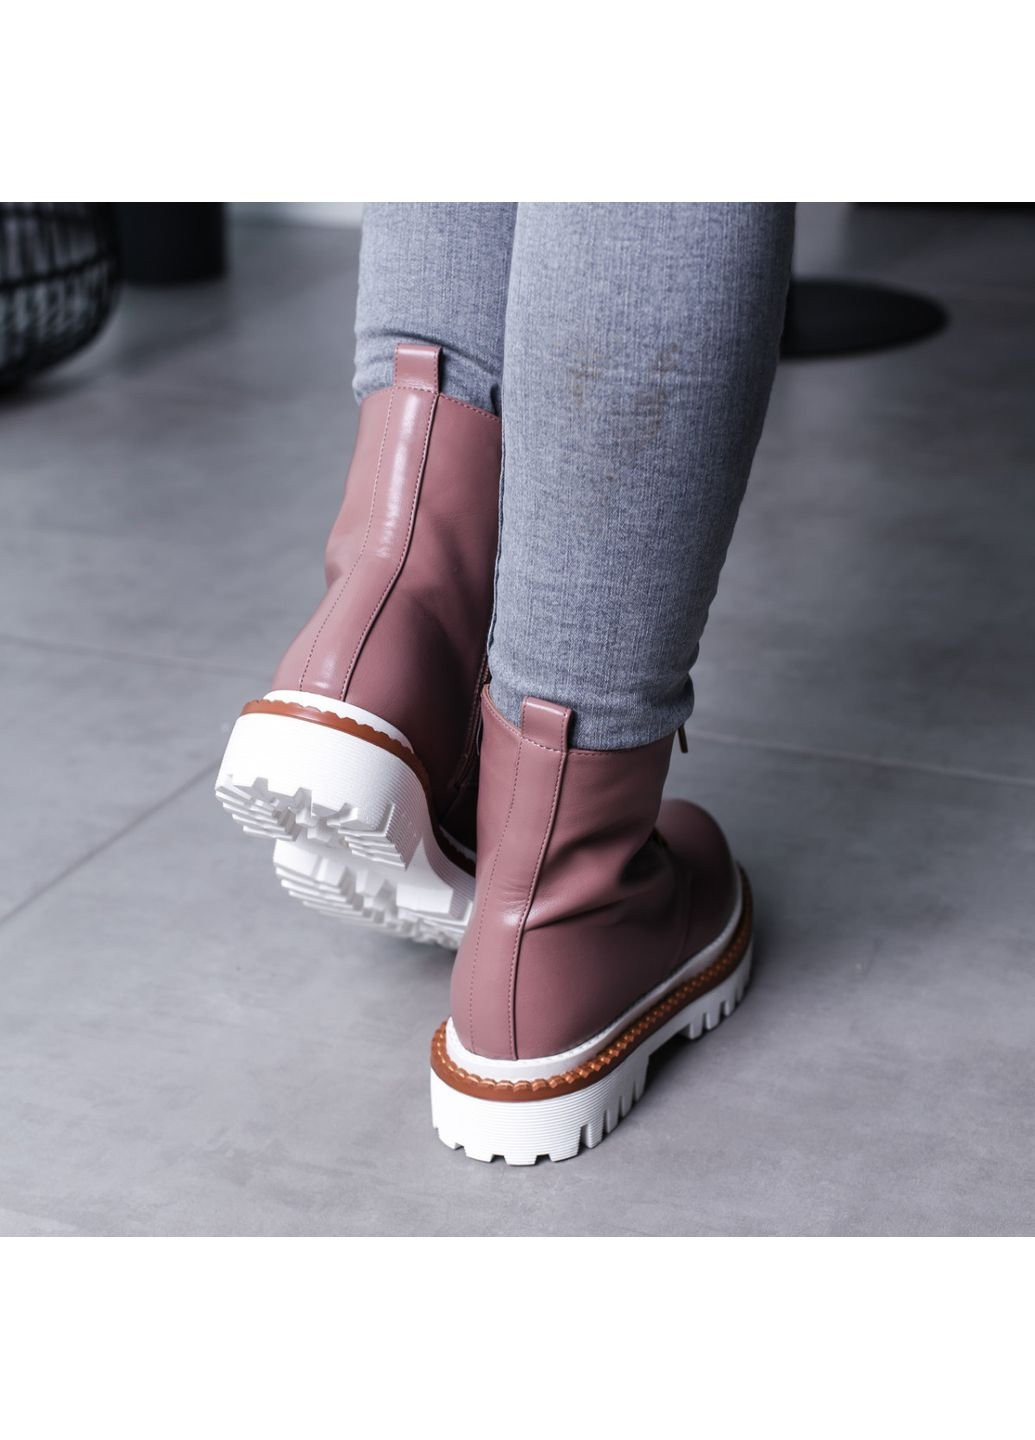 Осенние ботинки женские chrisley 3461 40 25,5 см бежевый Fashion из искусственной кожи